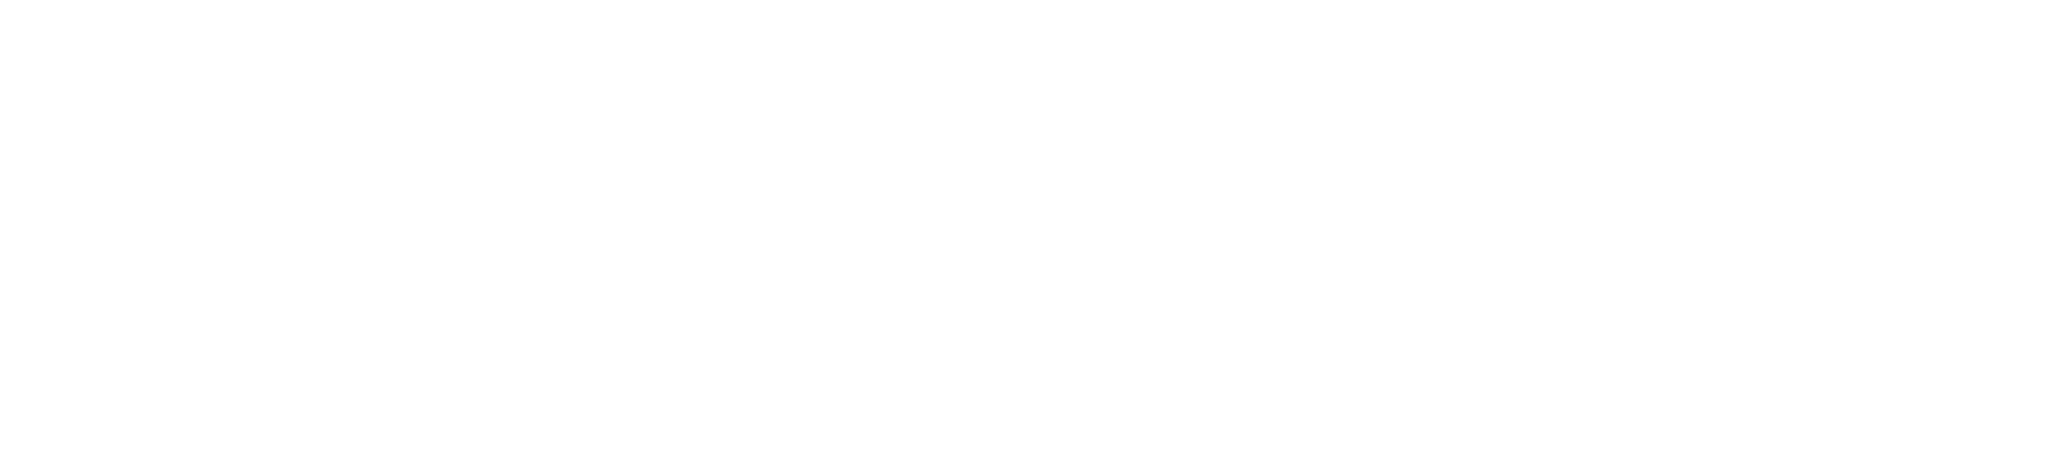 Boeing_full_logo